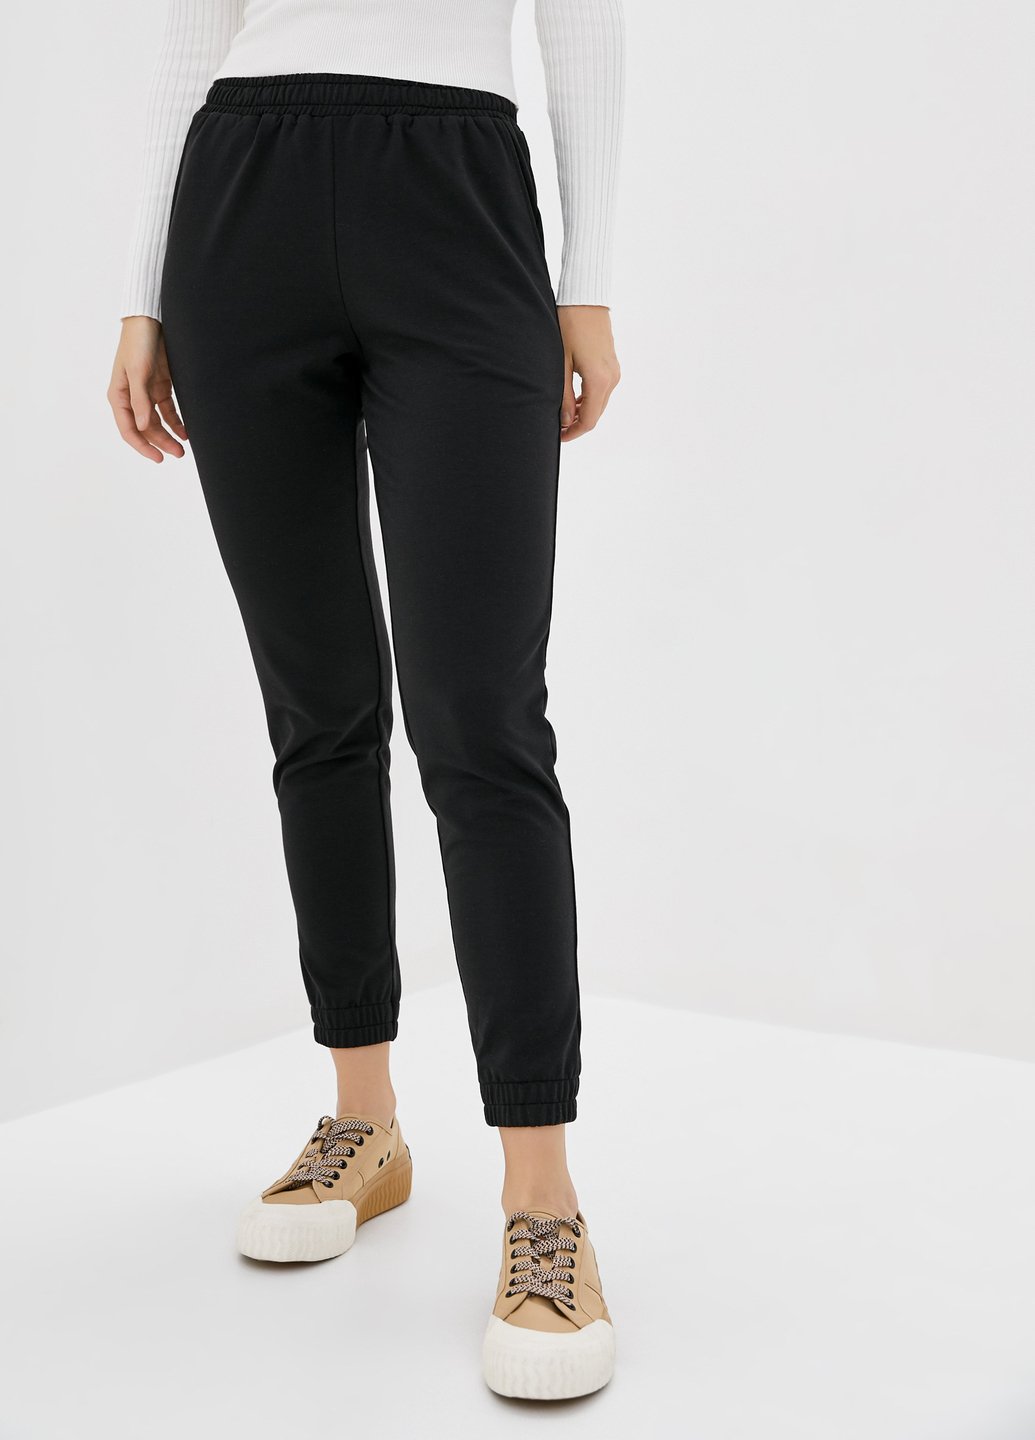 Купити Спортивні штани жіночі Merlini Сіті 600000055 - Чорний, 42-44 в інтернет-магазині